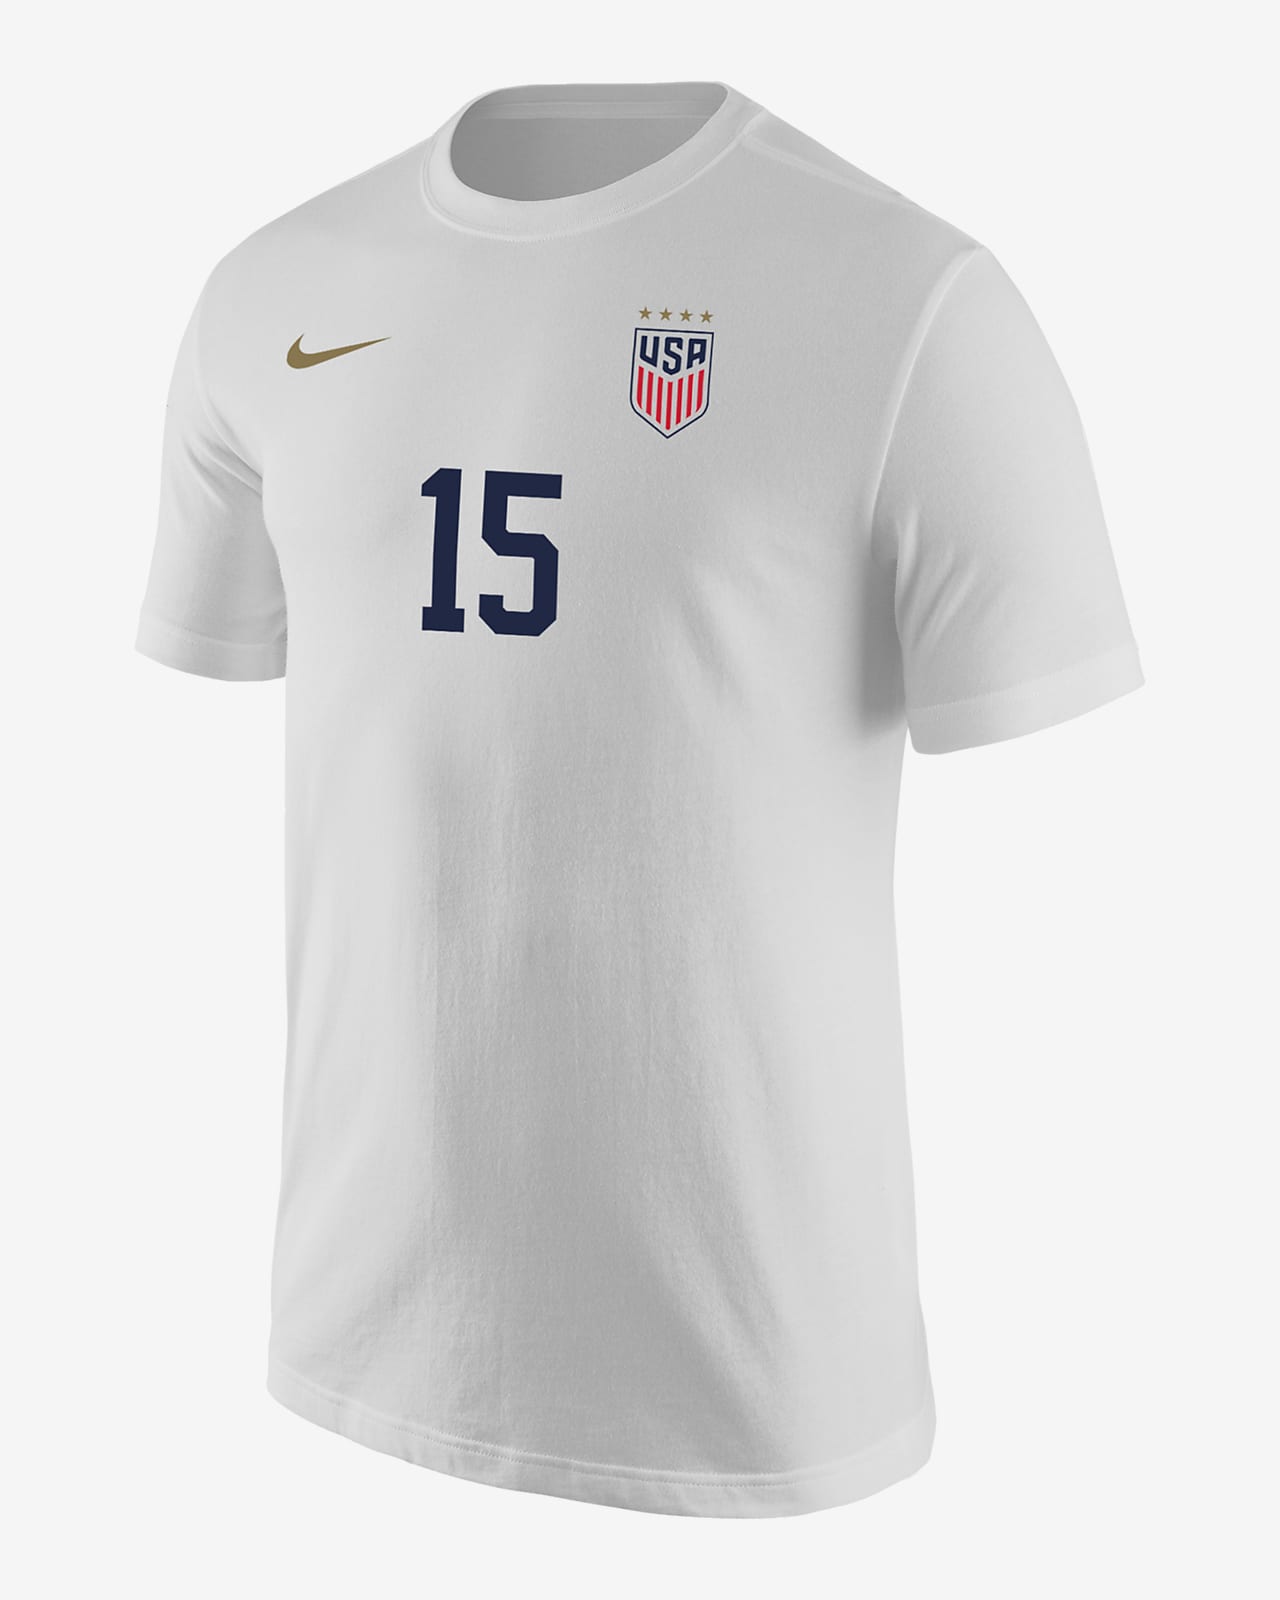 Megan Rapinoe USWNT Men's Nike Soccer T-Shirt